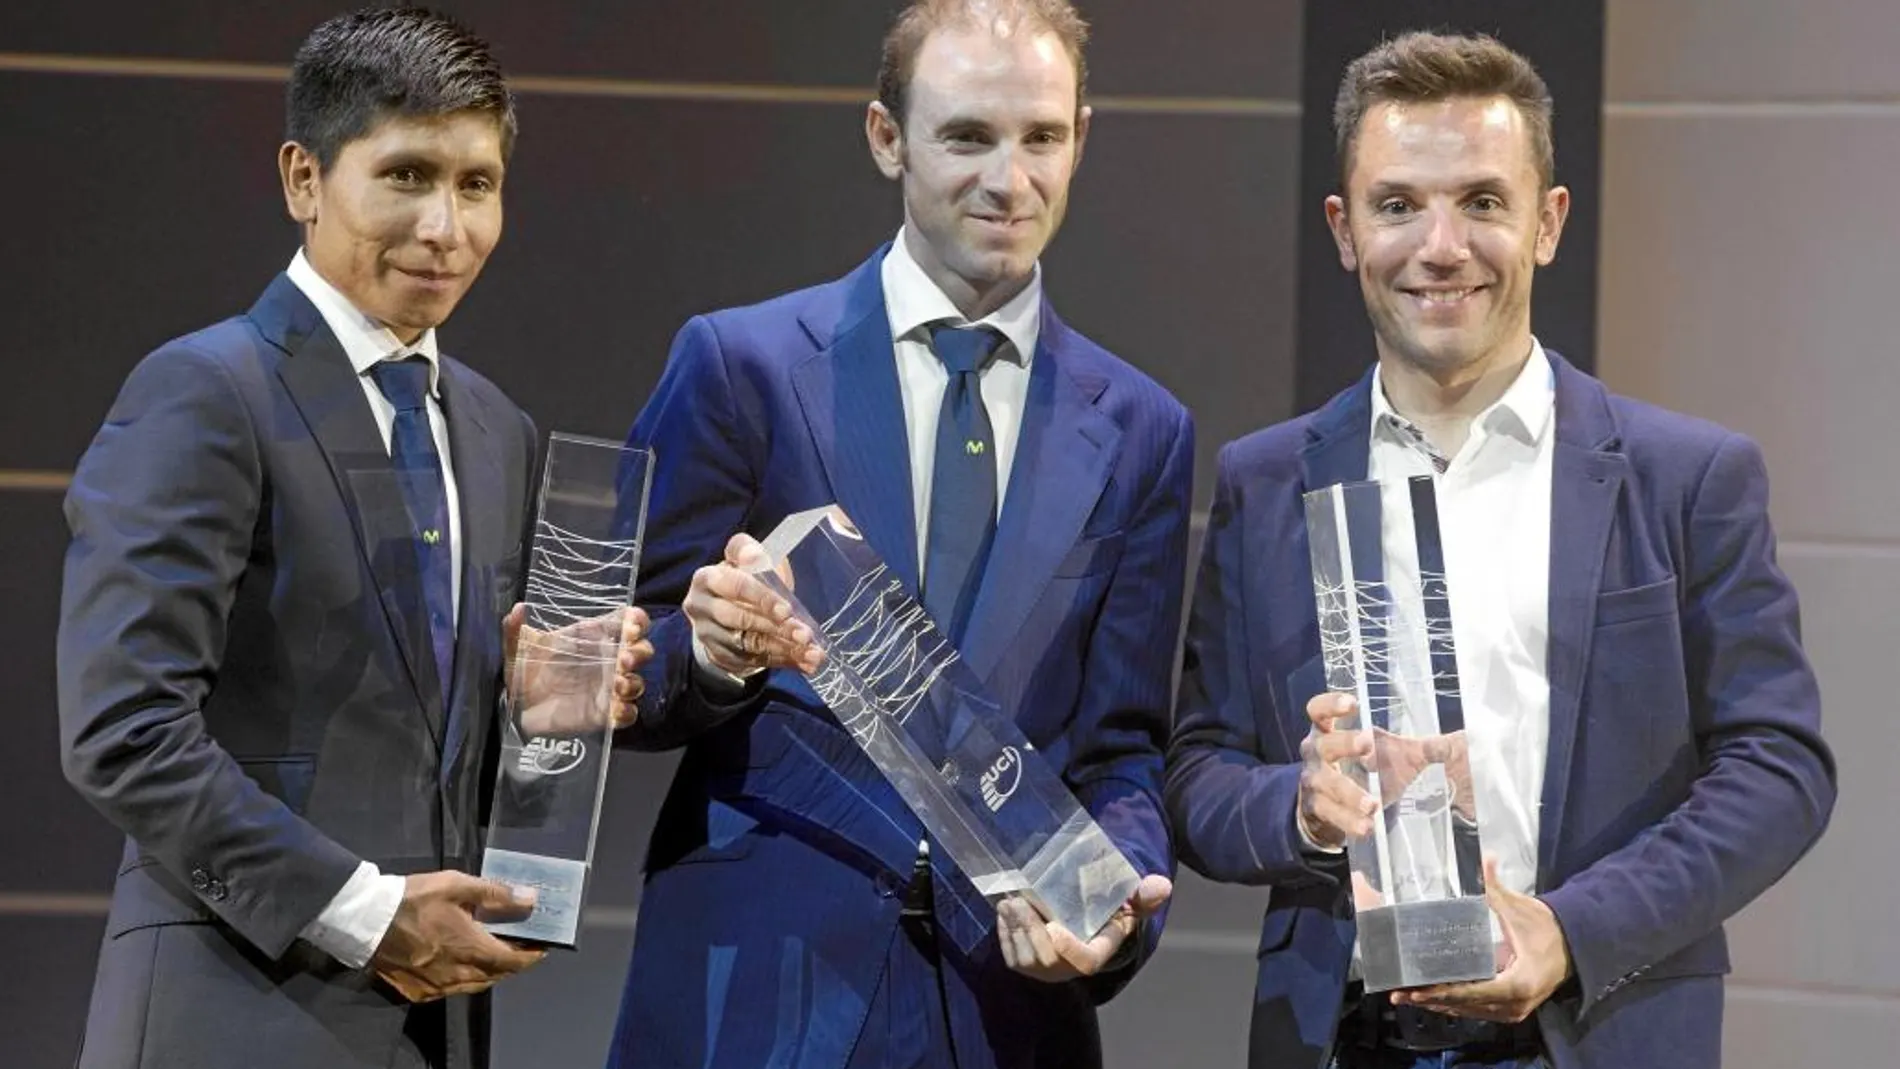 Valverde, con el trofeo de número uno, junto a Purito y Quintana